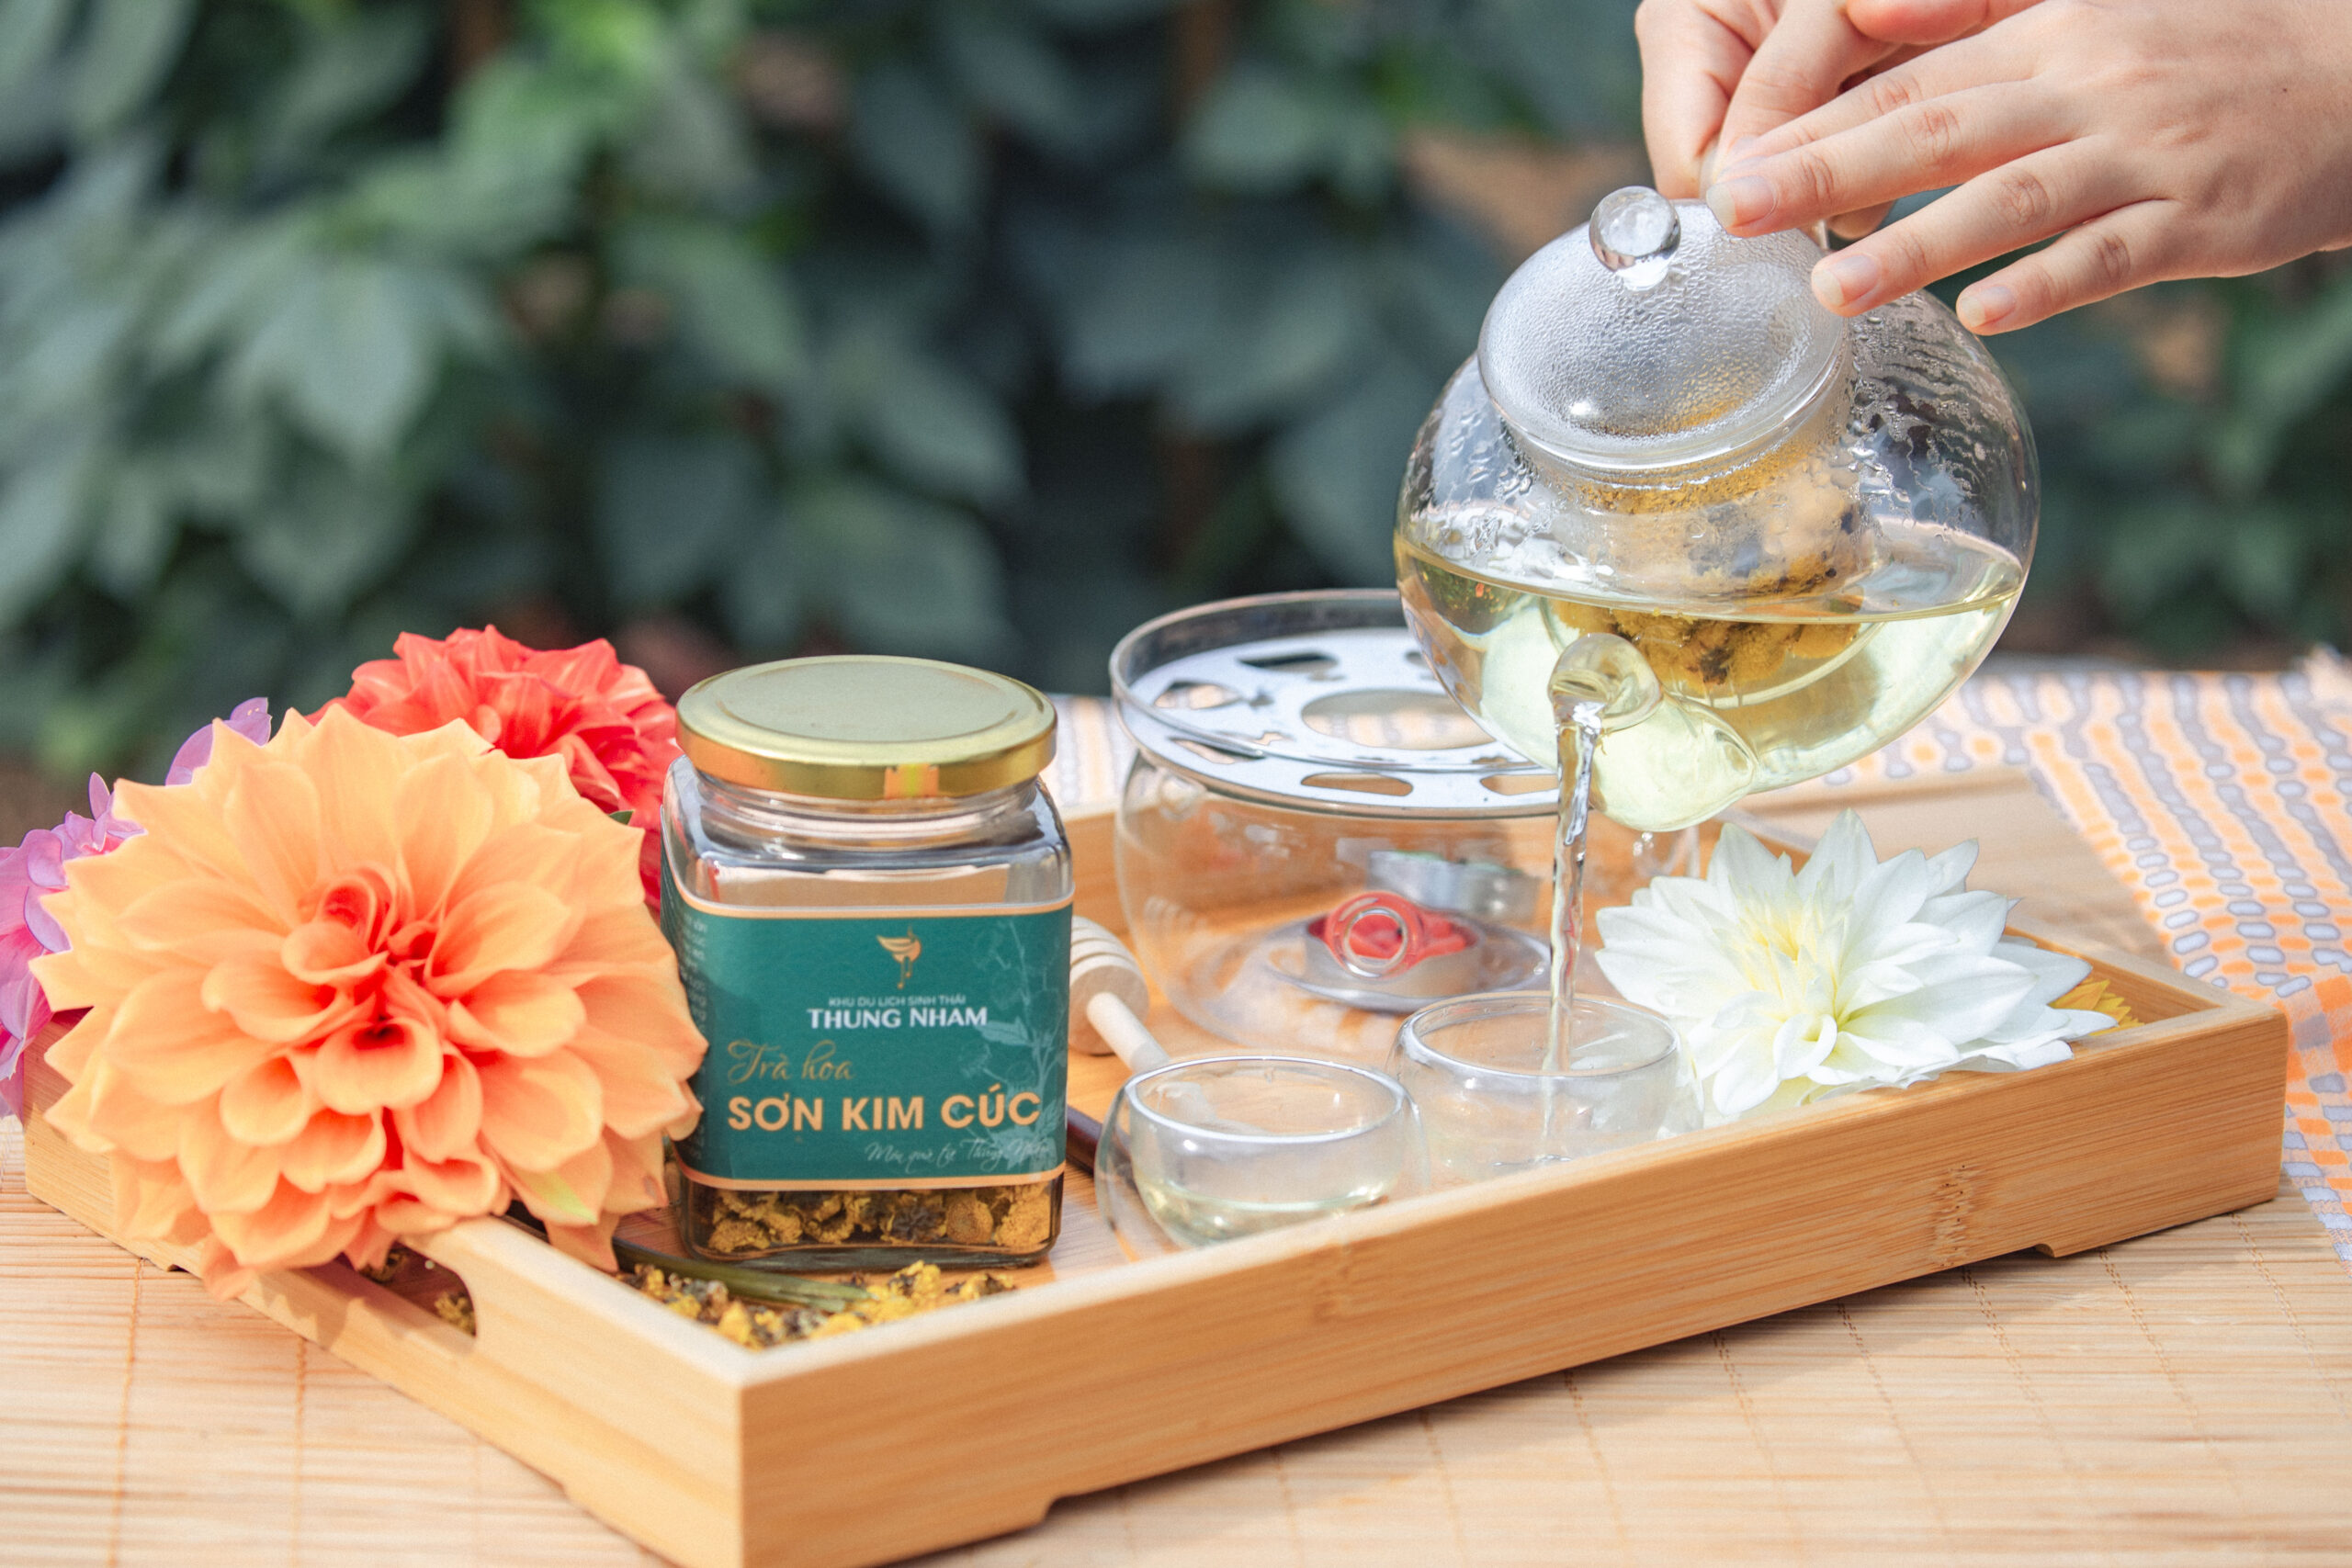 Thung Nham ra mắt sản phẩm trà hoa Sơn kim cúc